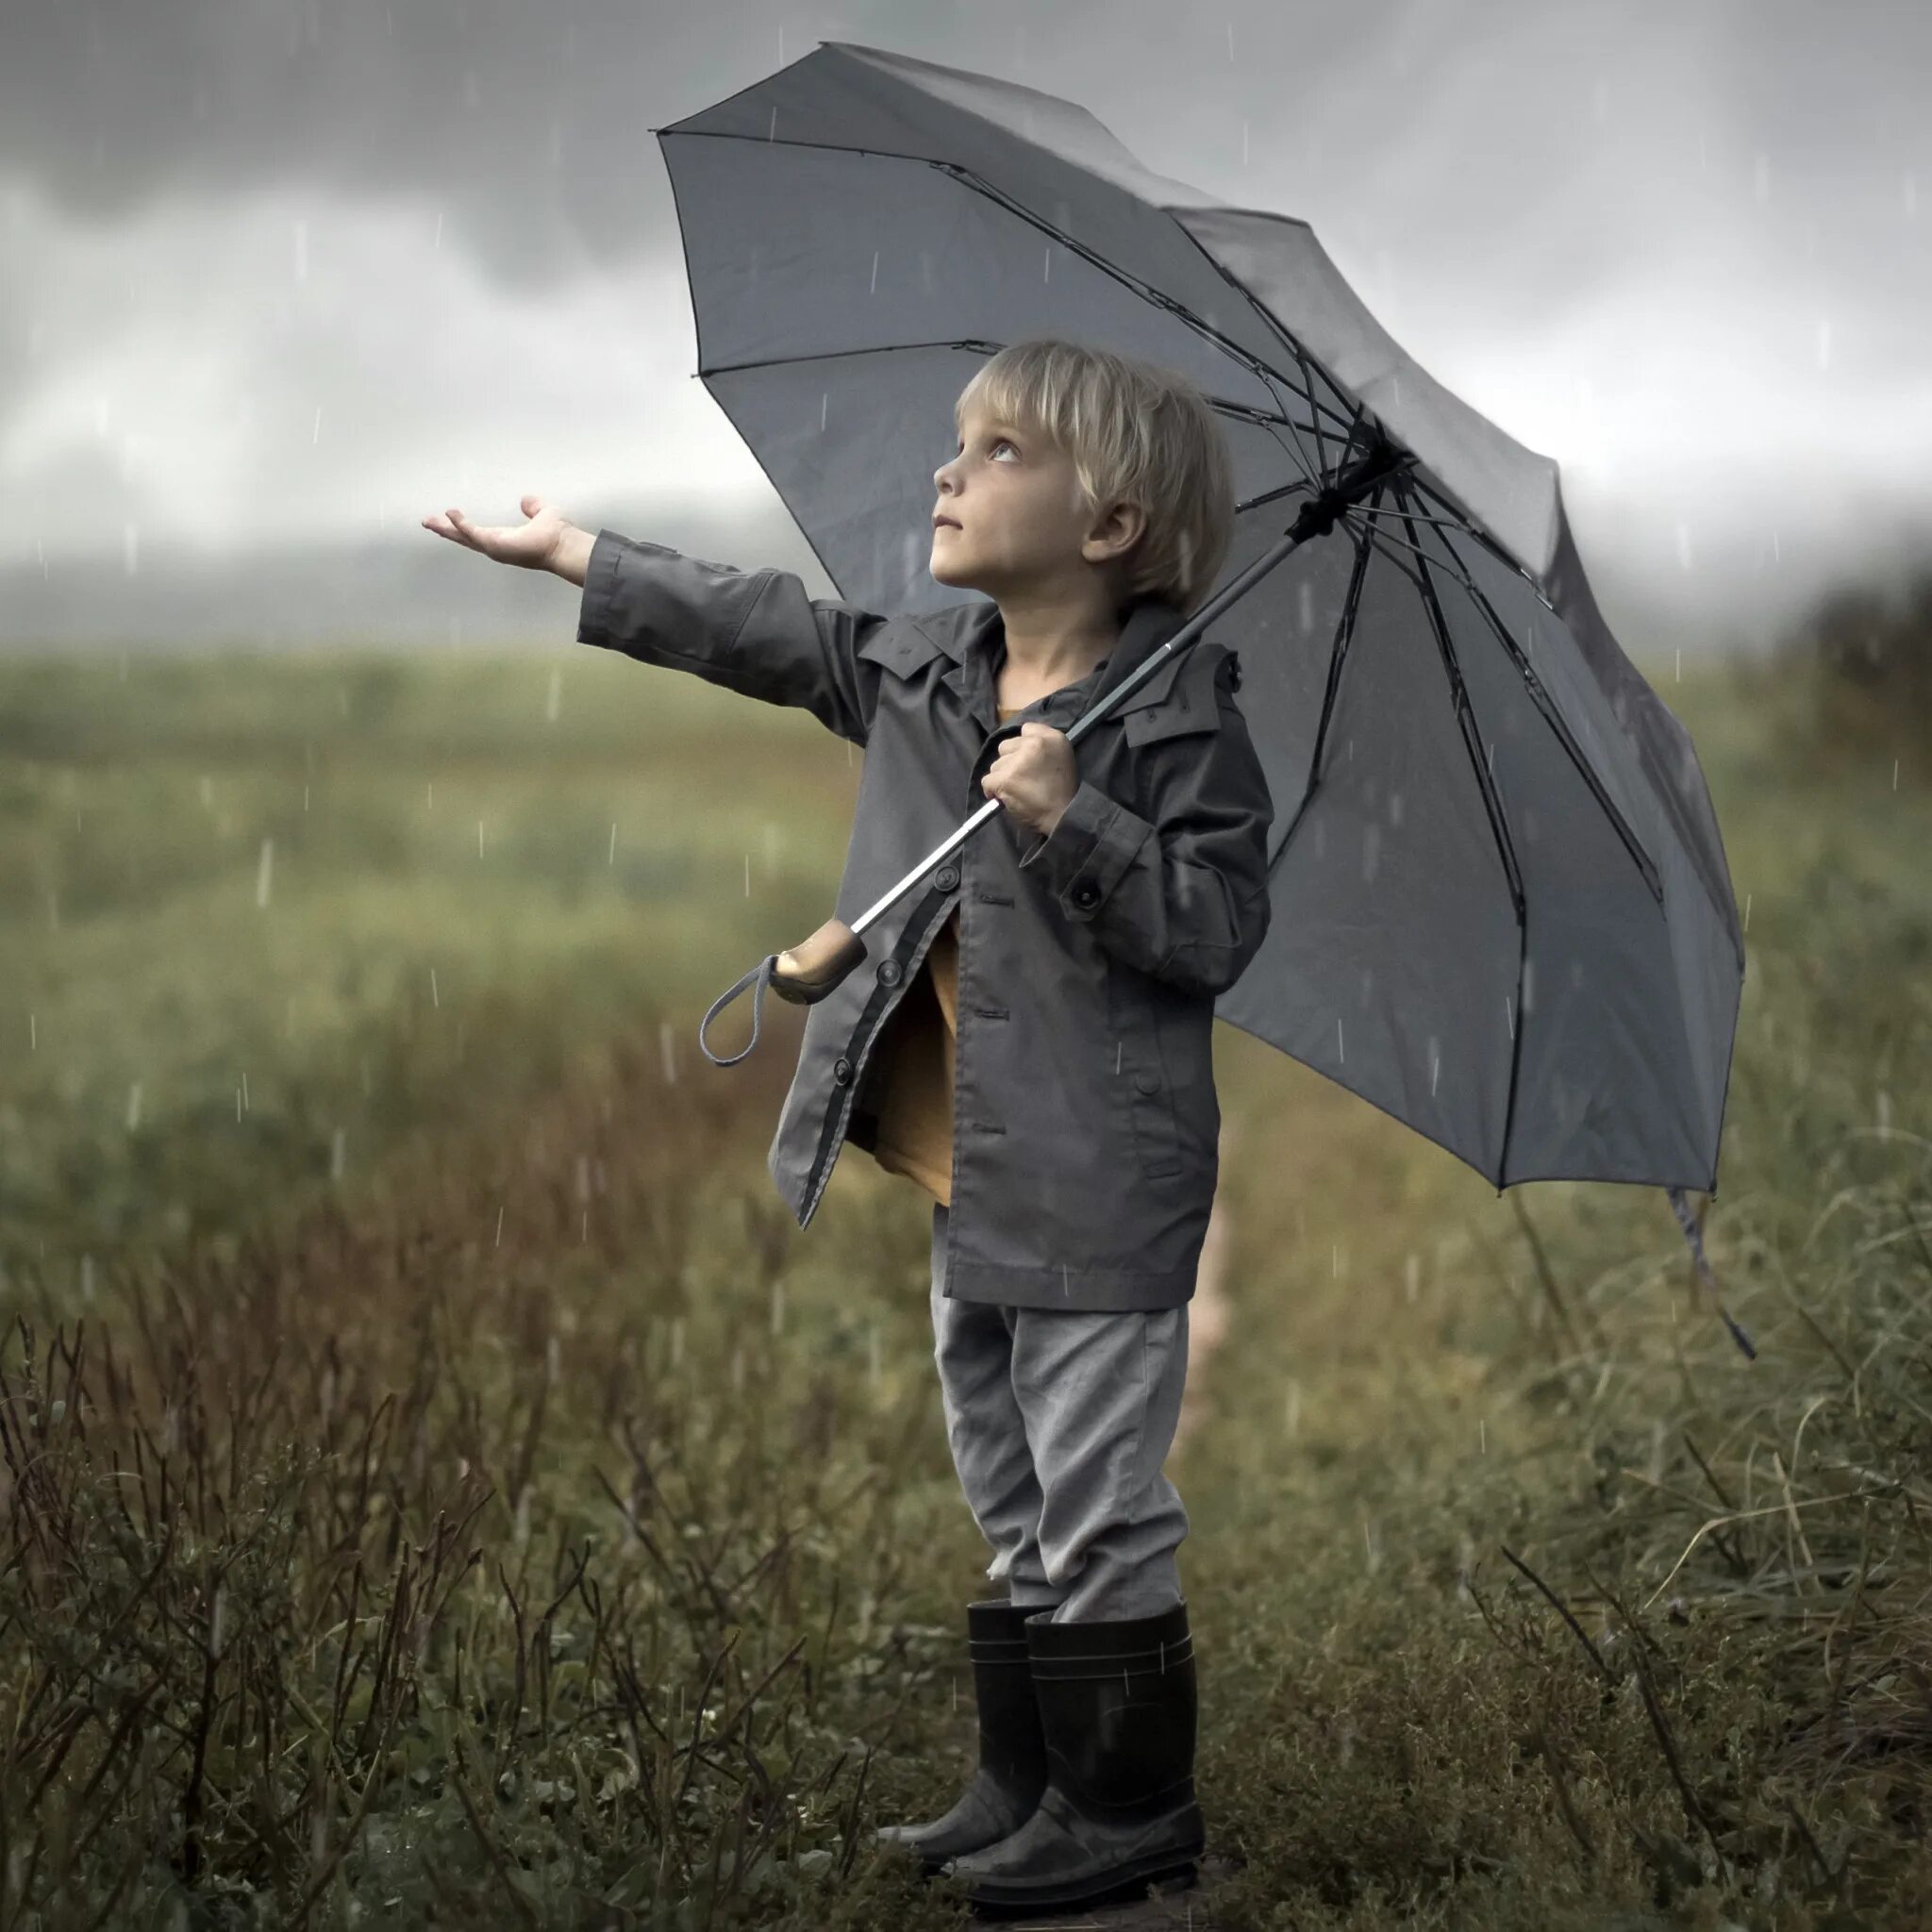 12 без дождя. Человек с зонтом. Мальчик с зонтиком. Человек под зонтом. Зонтик для детей.